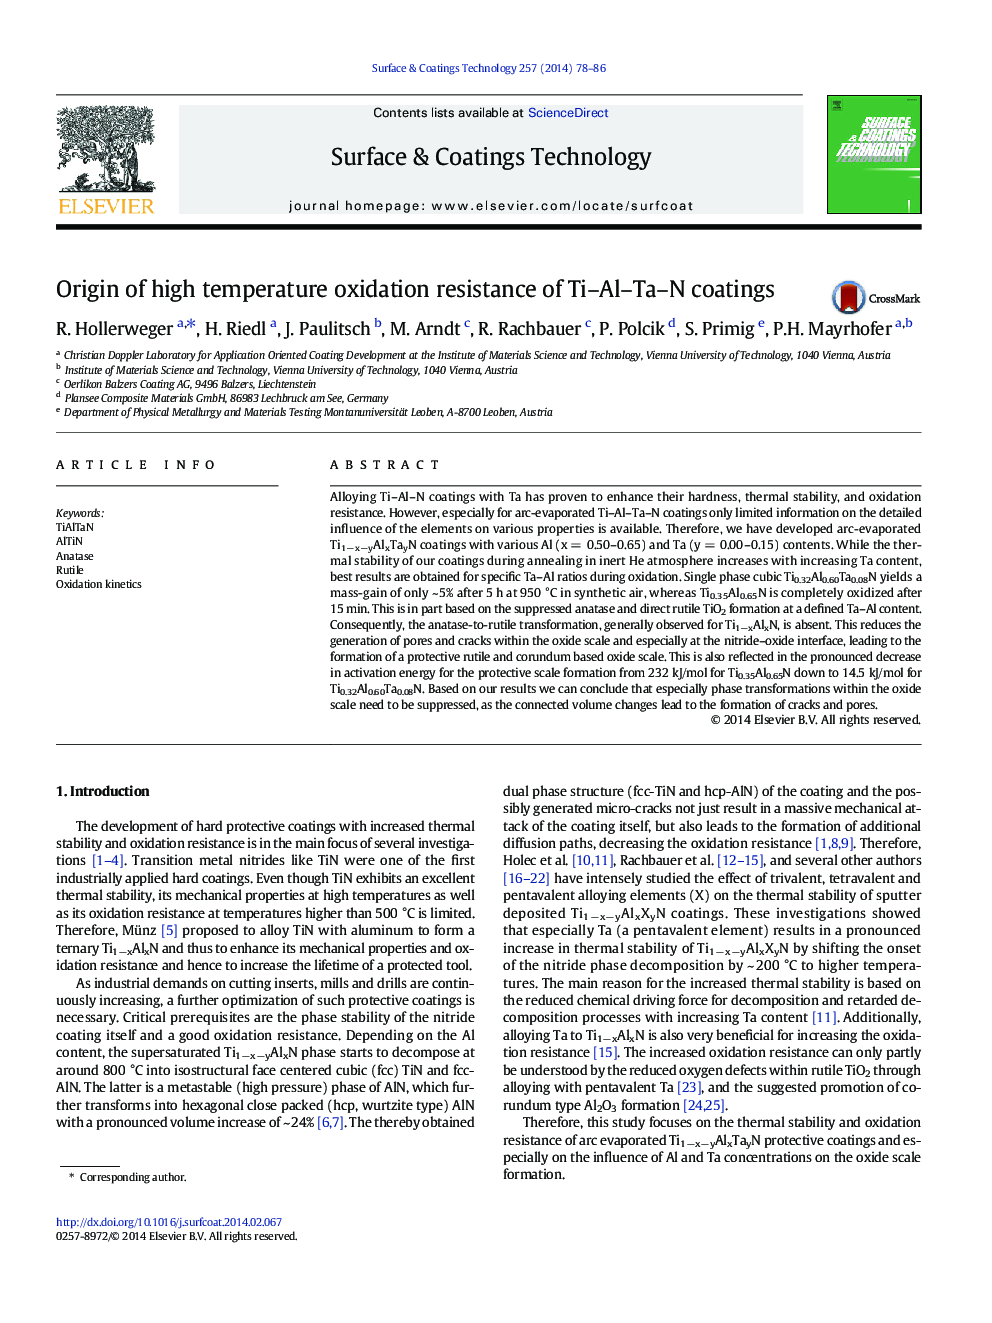 Origin of high temperature oxidation resistance of Ti-Al-Ta-N coatings